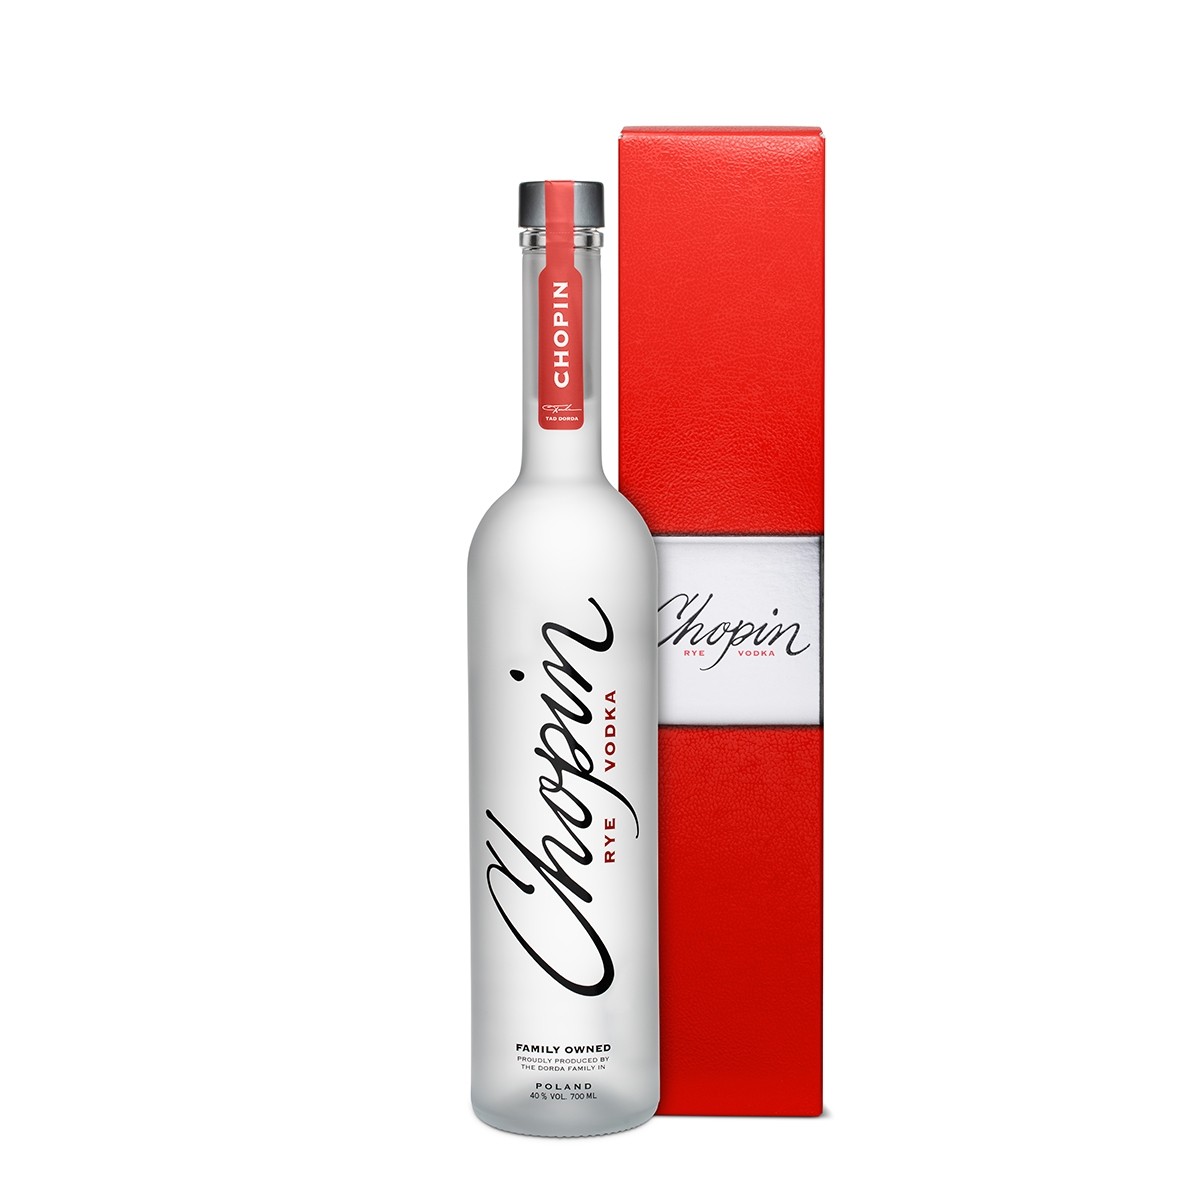 Chopin Rye Vodka 700 ml + caseta